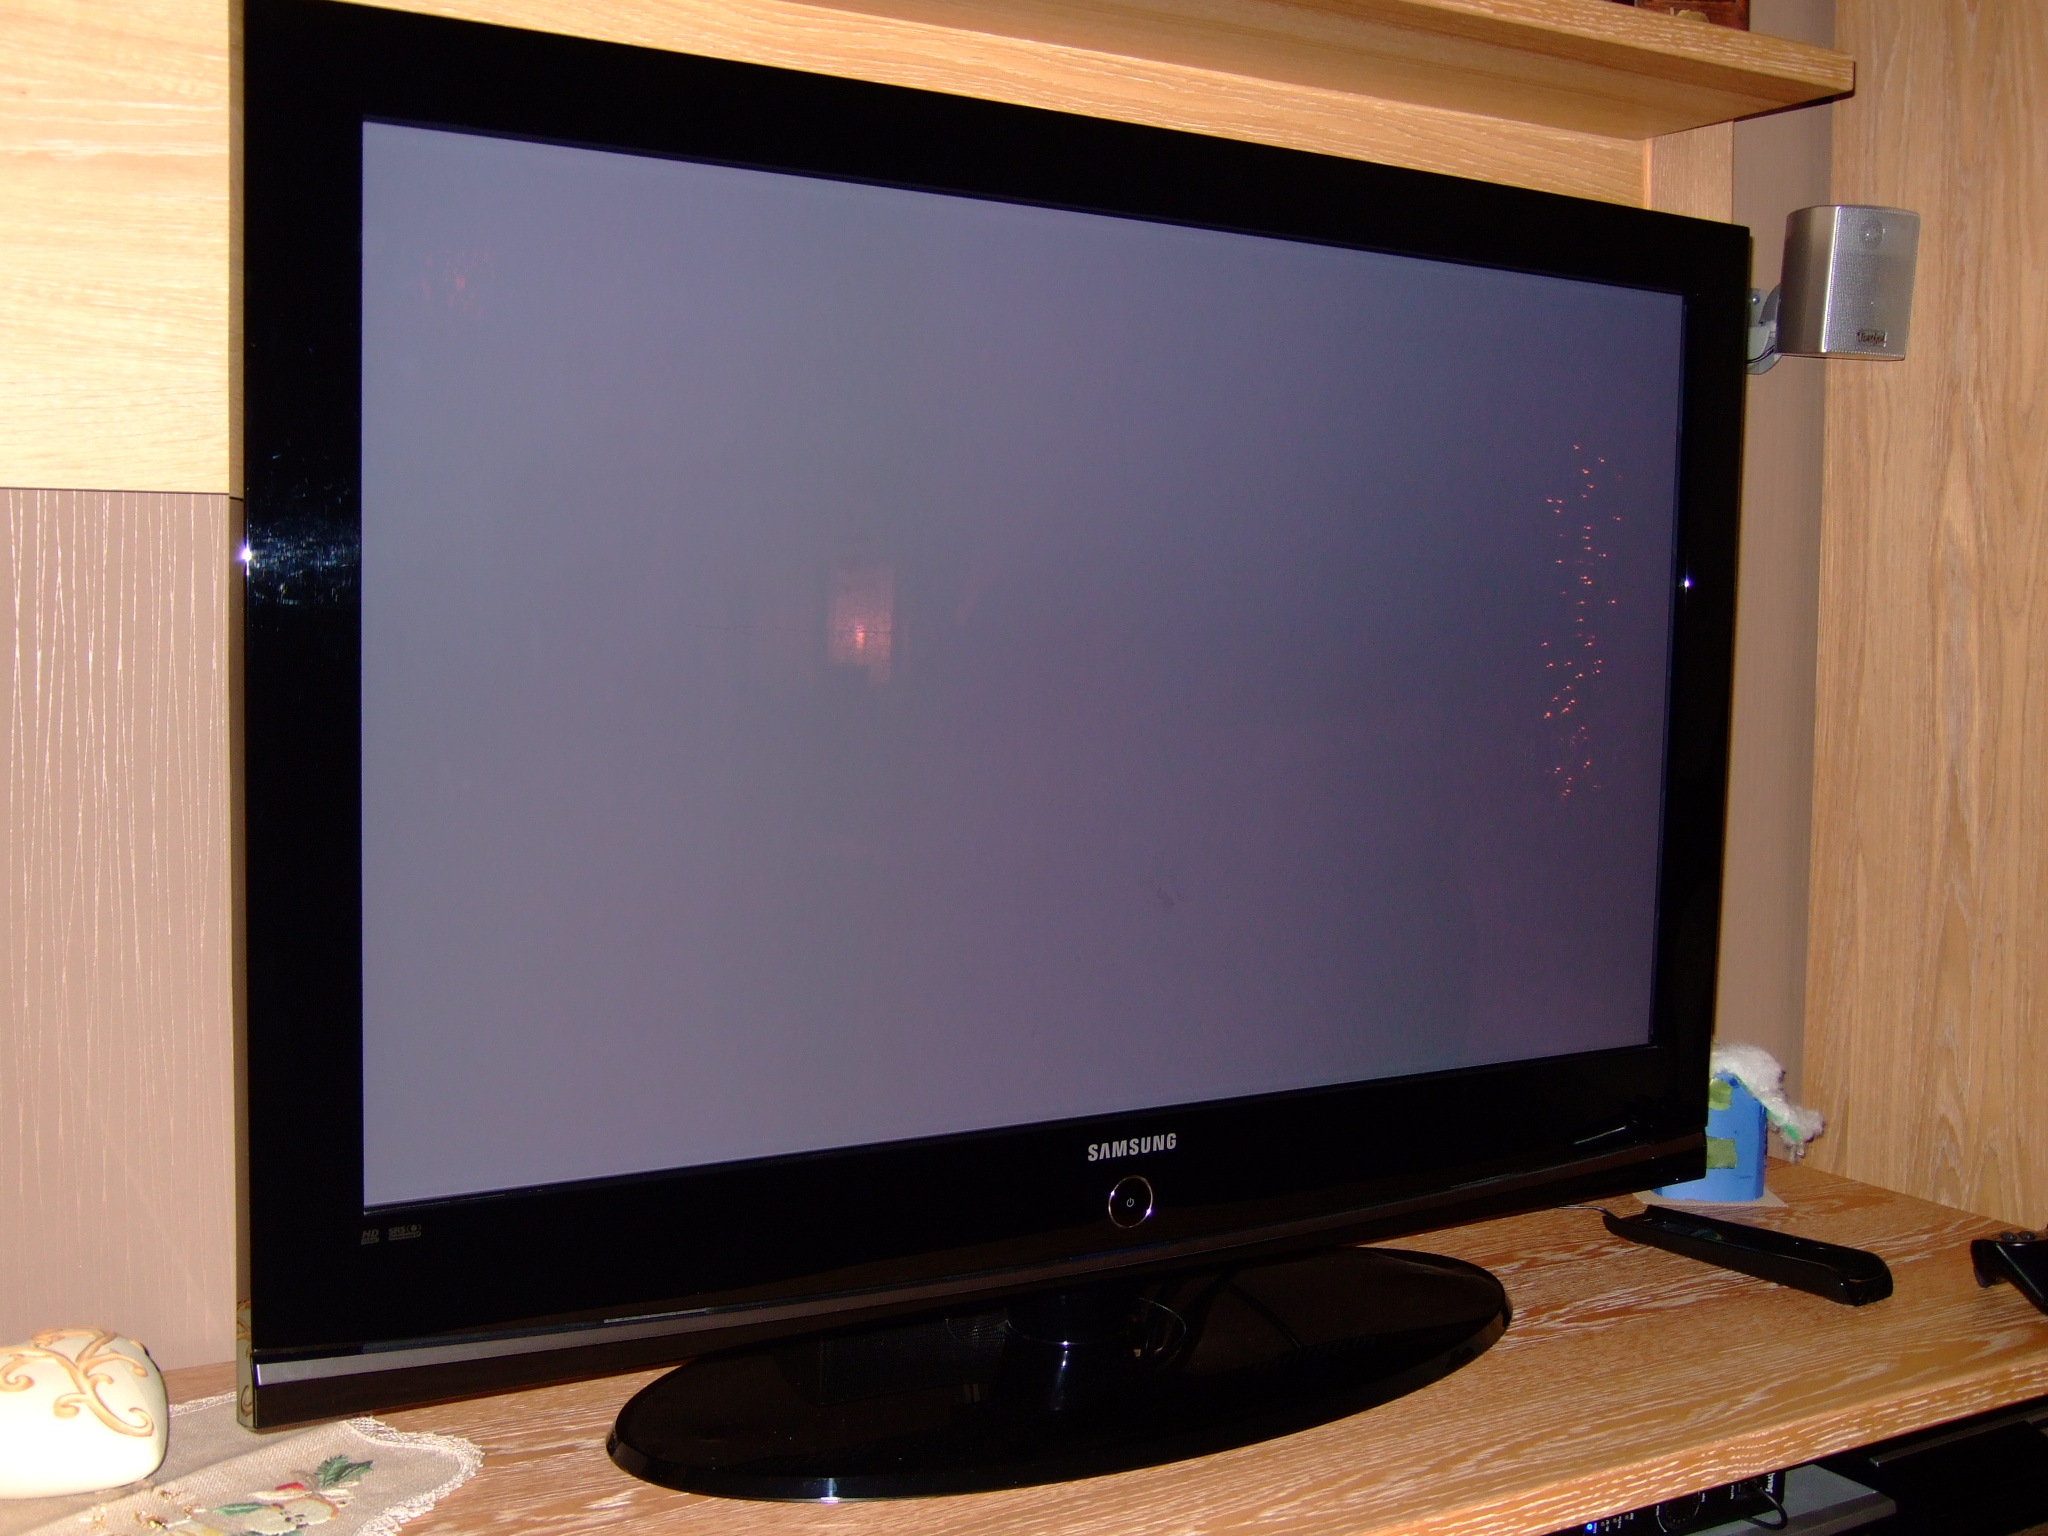 Б у телевизоры самсунг. Телевизор Samsung плазма 42 дюйма. Телевизор Samsung диагональ 106 см. Samsung le-32c350. Телевизор самсунг модель ps42a410c1 плазменный.